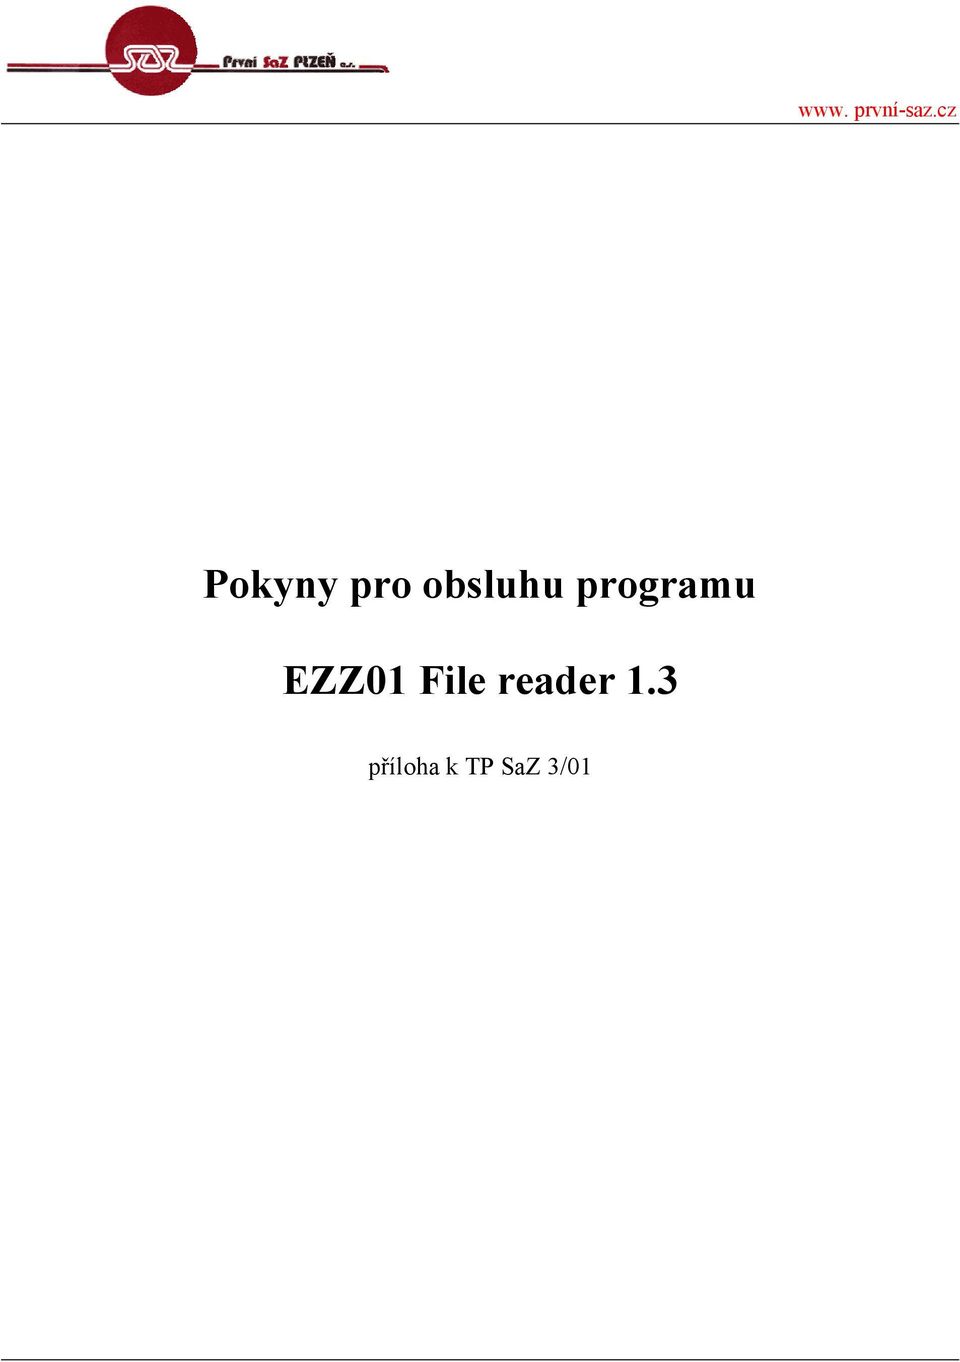 programu EZZ01 File